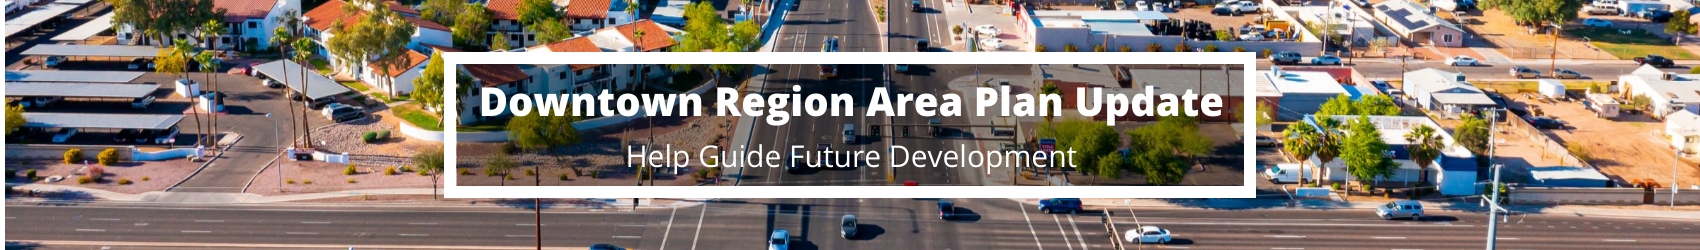 Downtown Region Area Plan Update 